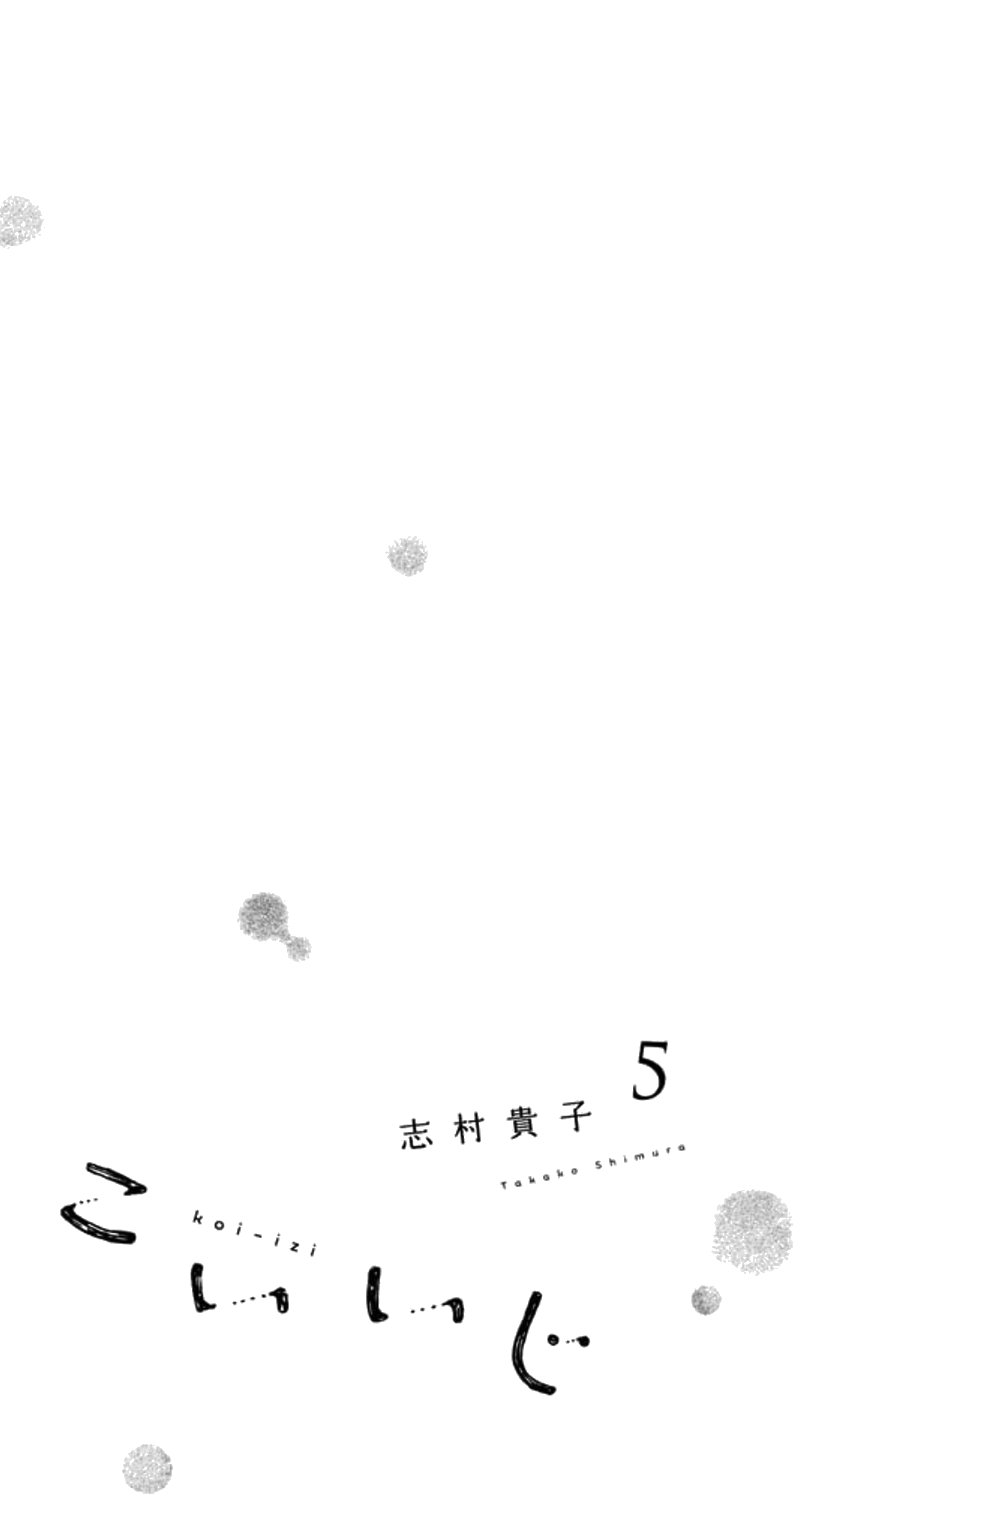 Koiiji - chapter 21 - #2